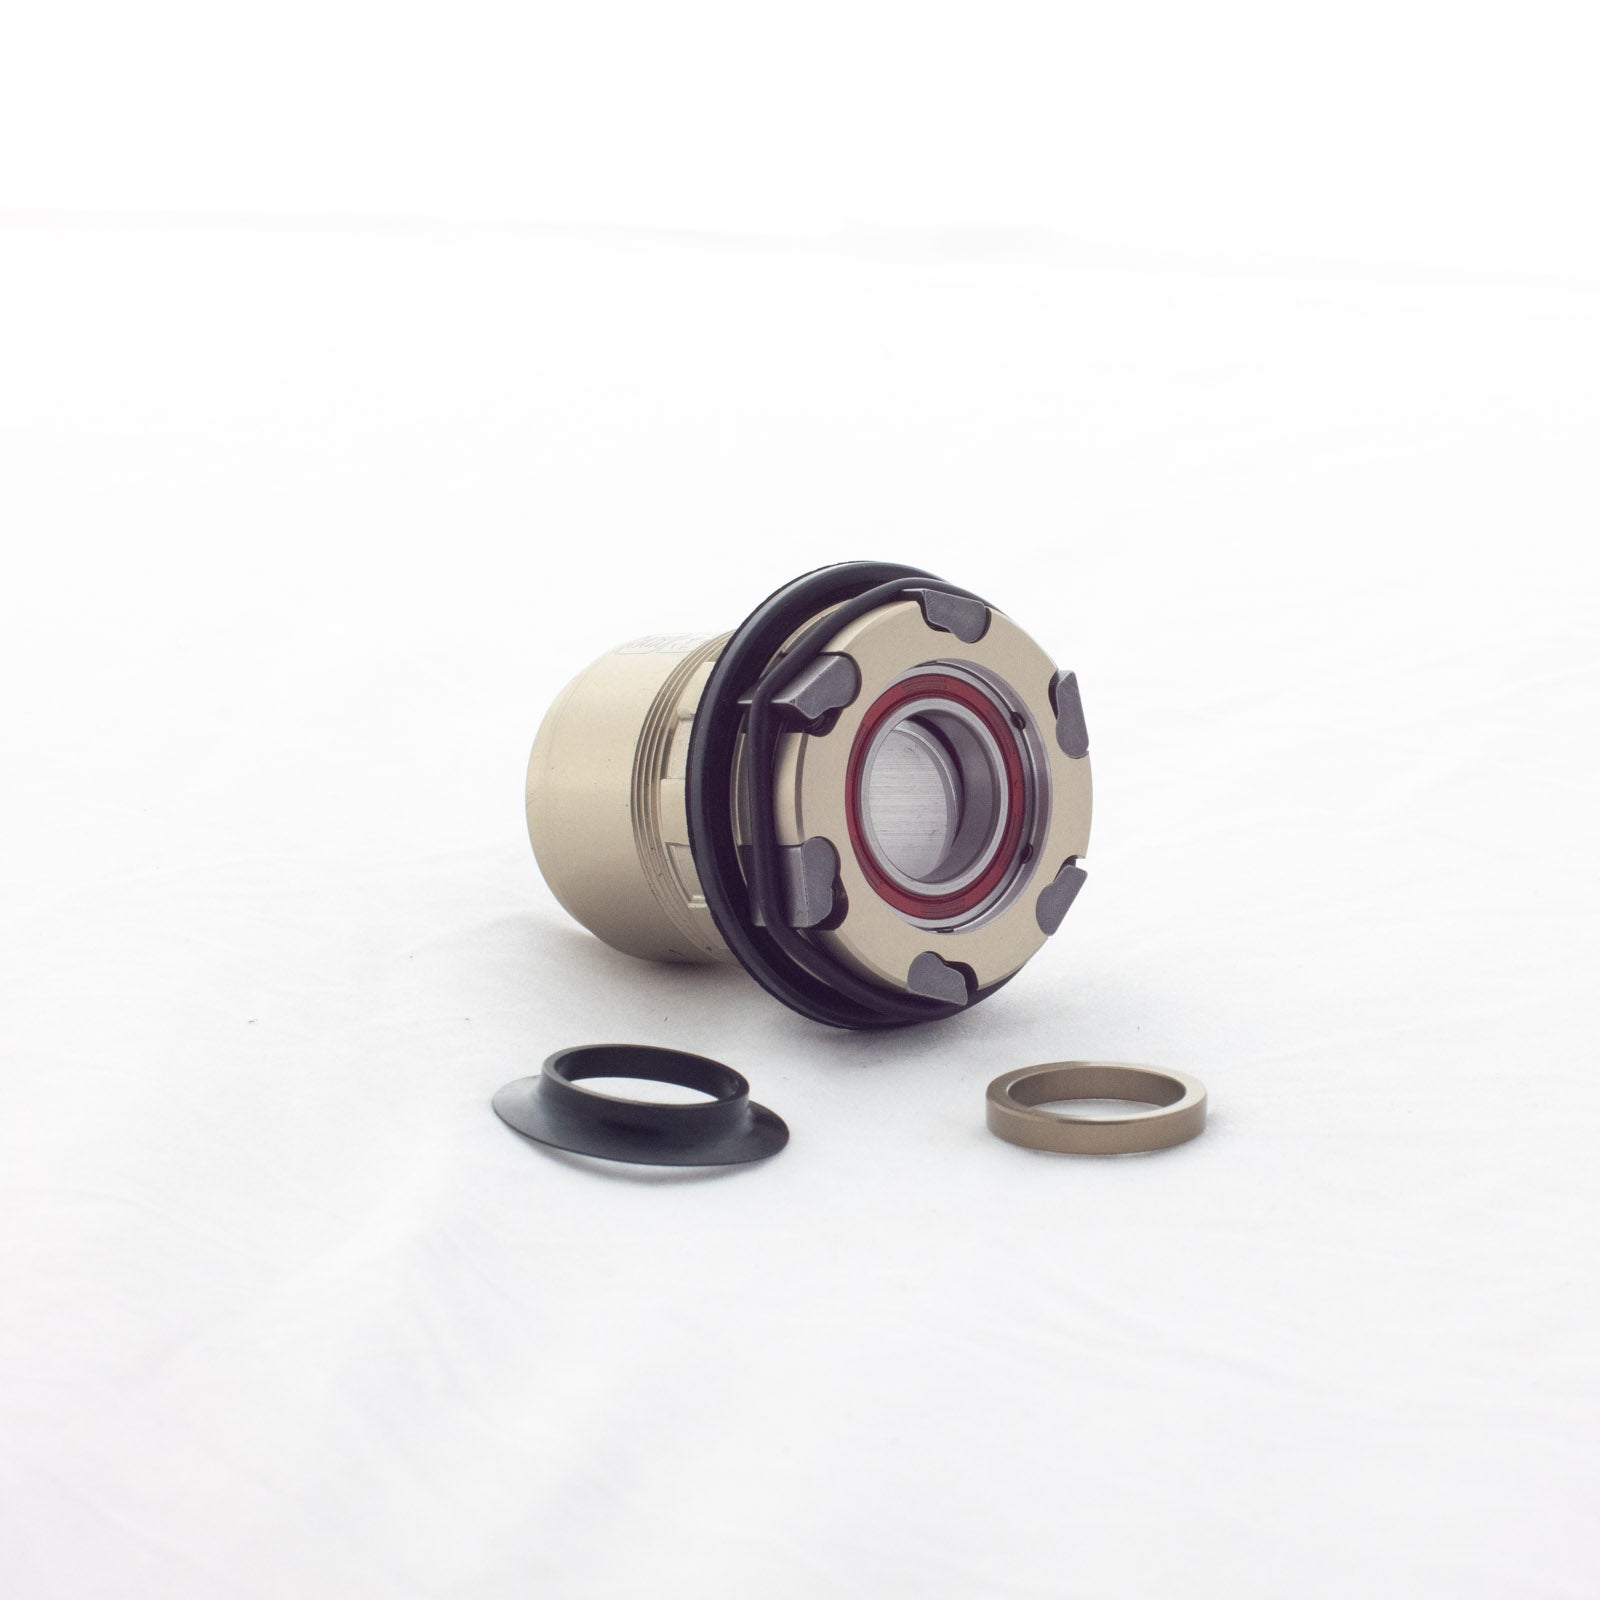 Shimano Válvula Tubeless - para Llantas de 50 mm, Y0MG98010